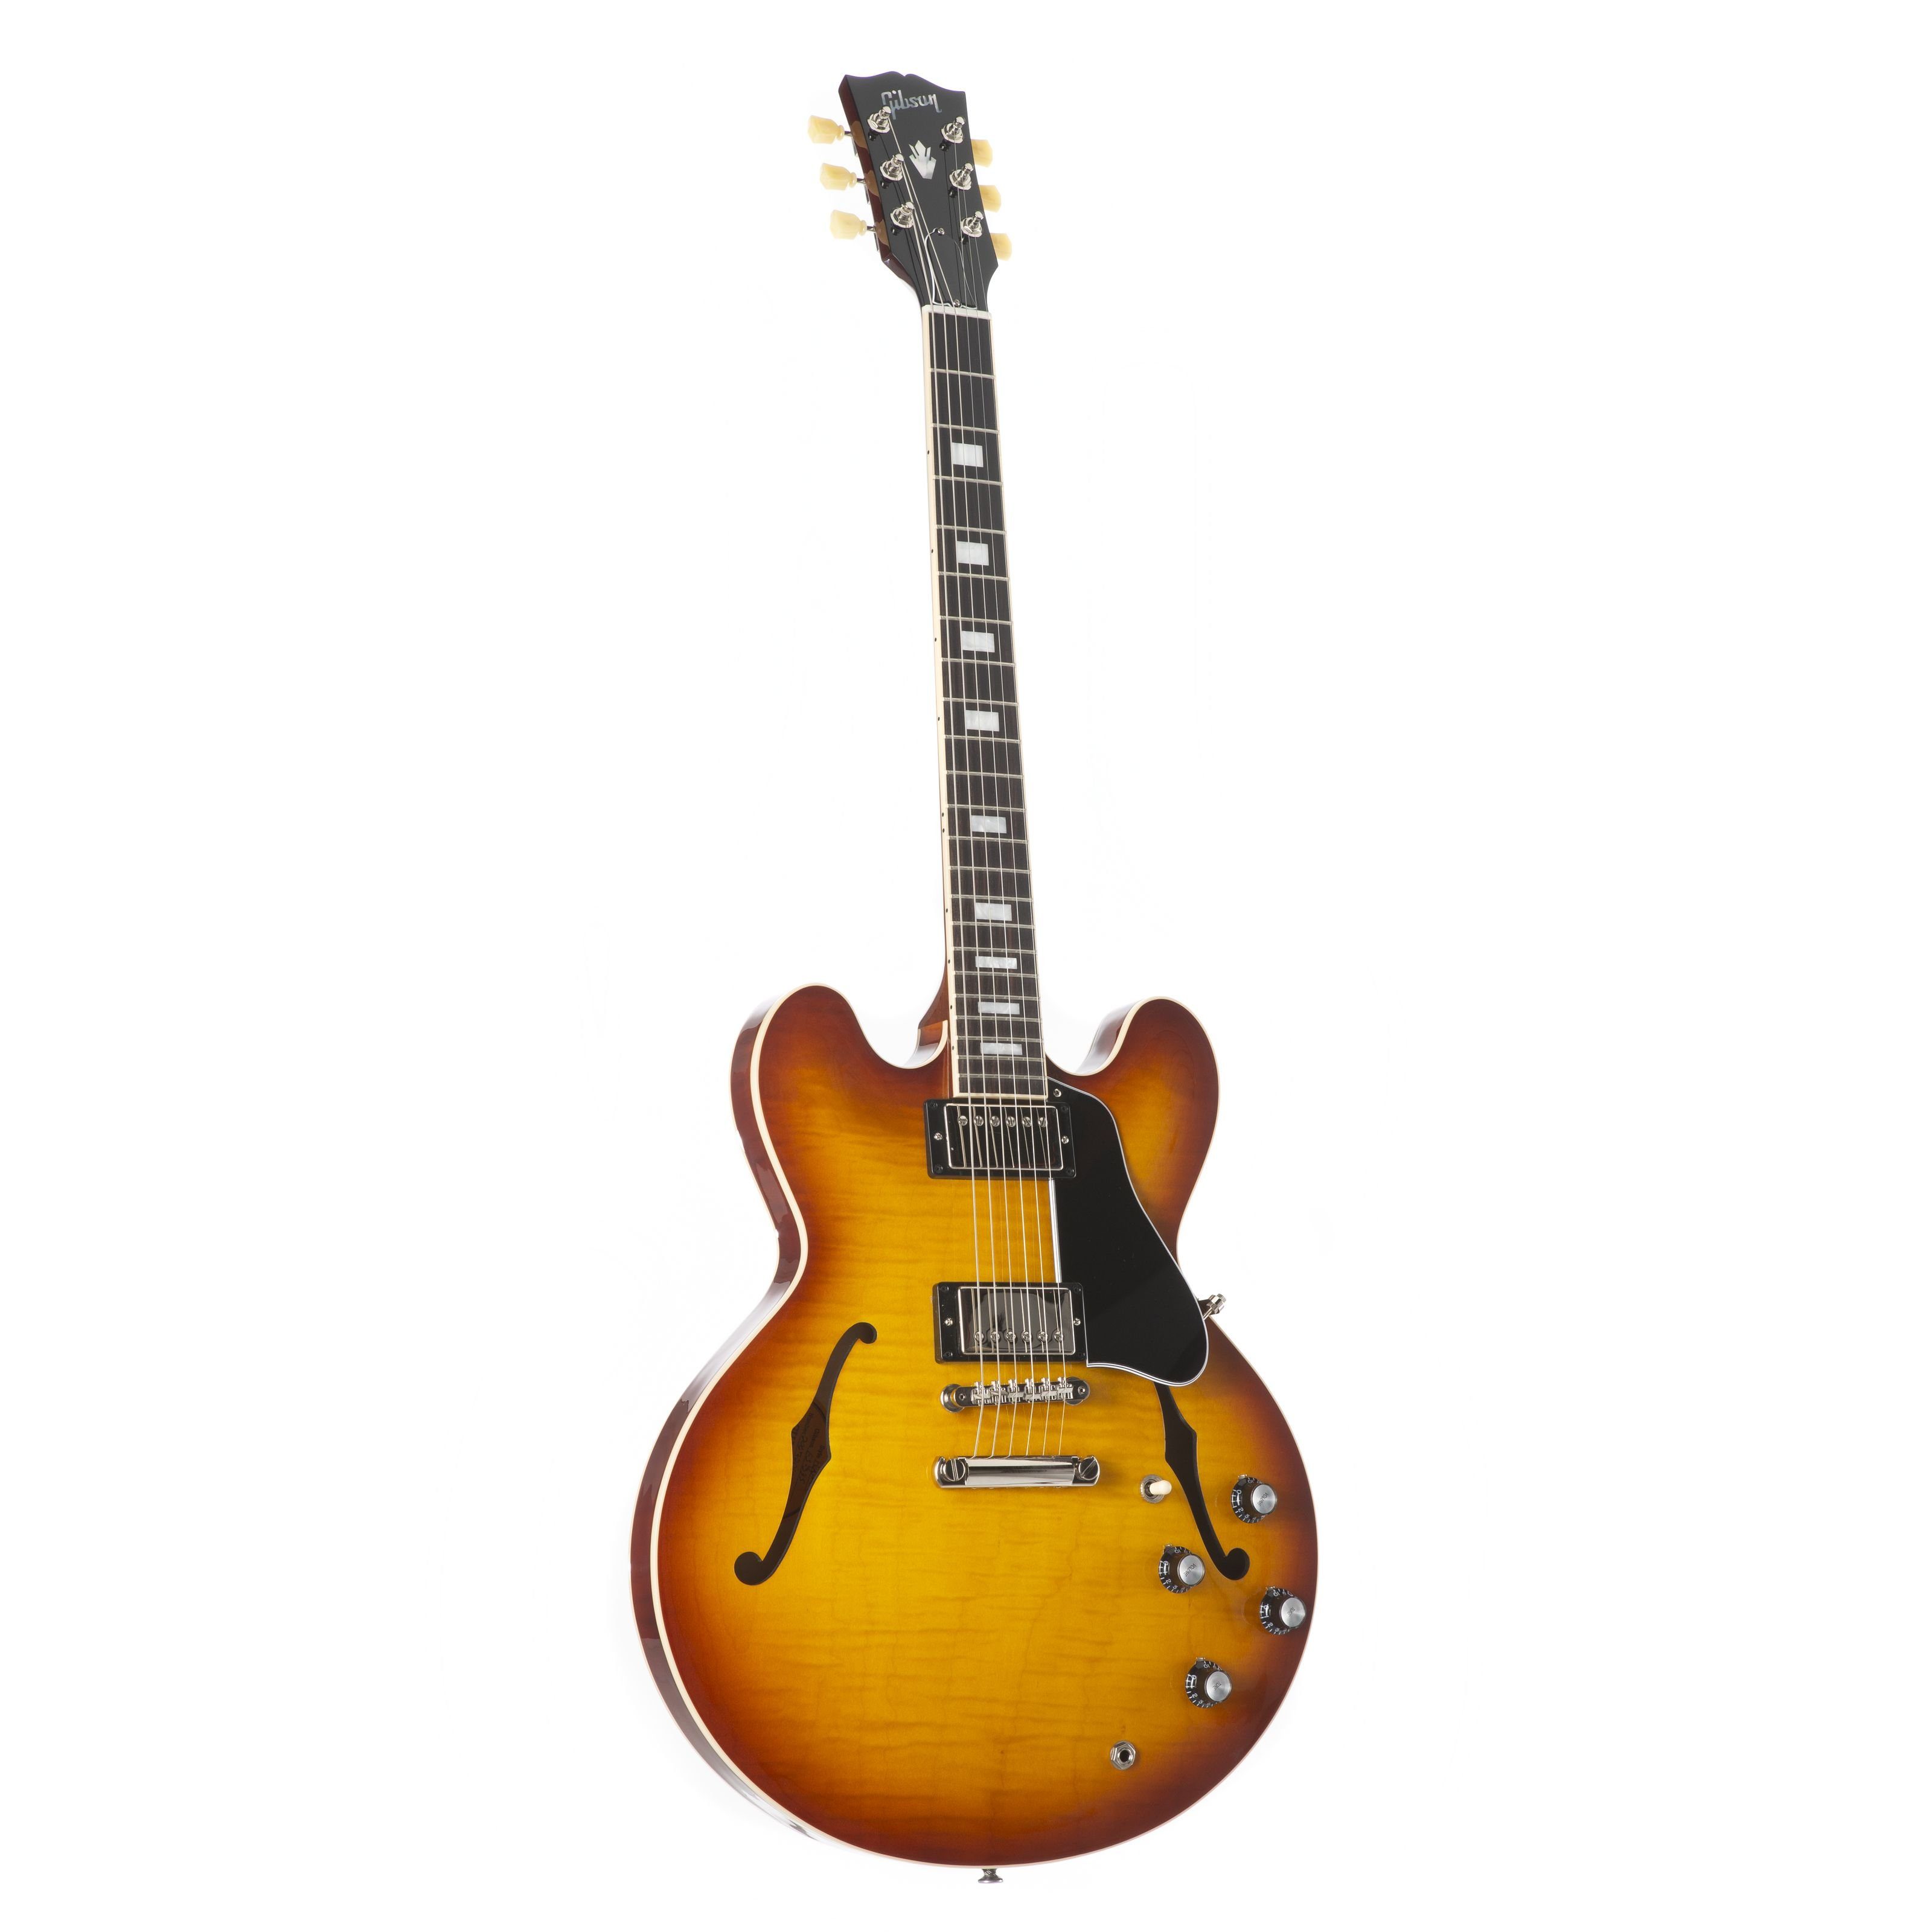 ES-335 Halbakustik - Figured Gibson Gitarre Spielzeug-Musikinstrument, Tea Iced